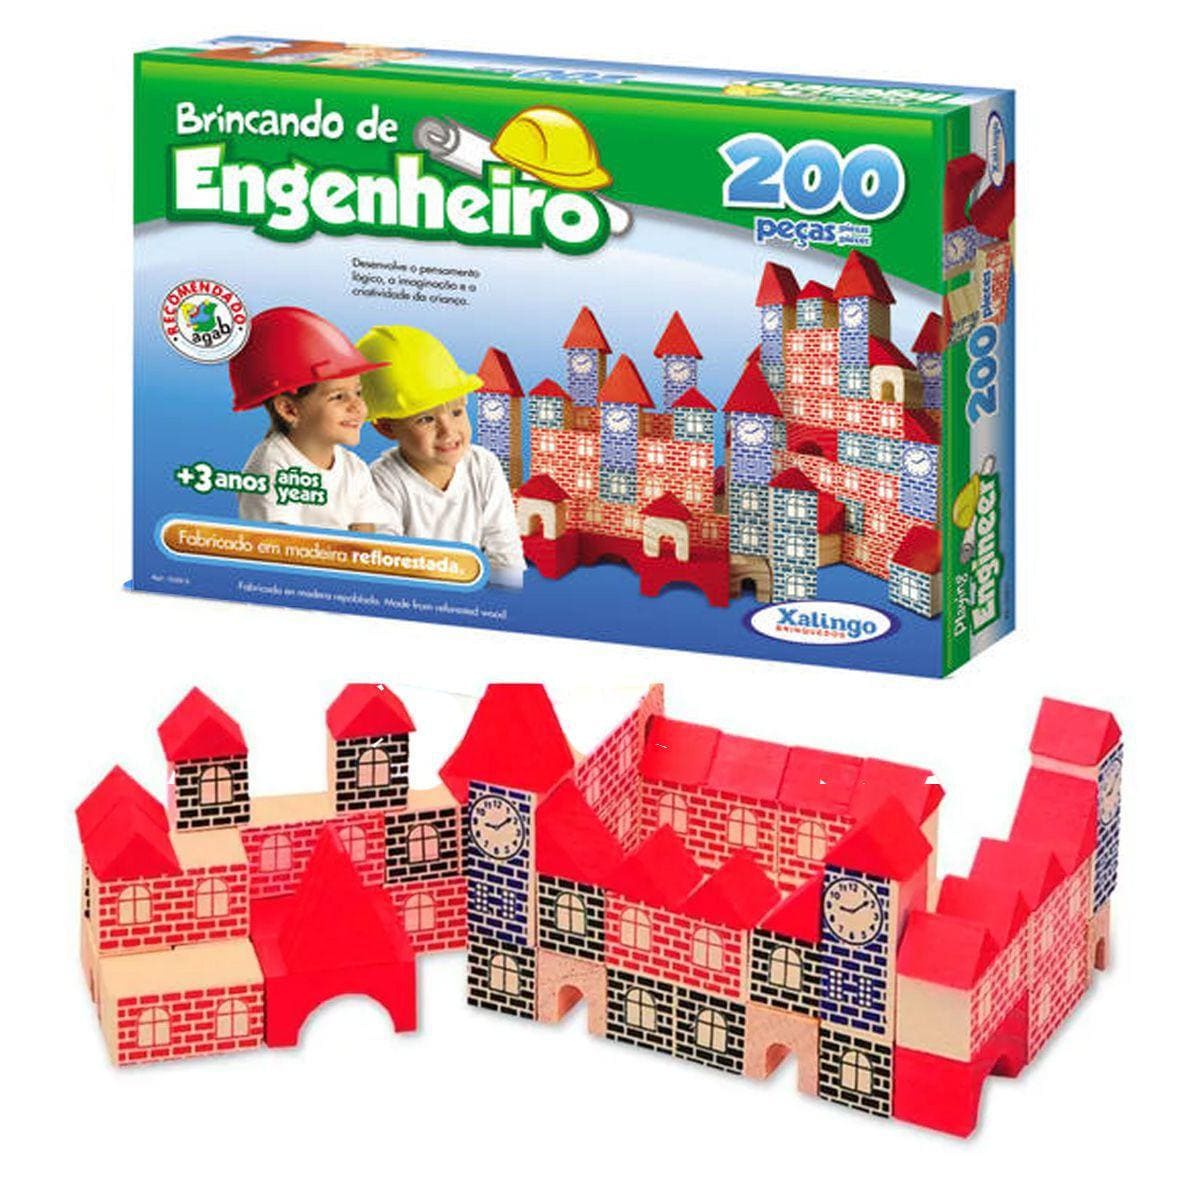 Brincando de Engenheiro 200 peças Brinquedo educativo Xalingo